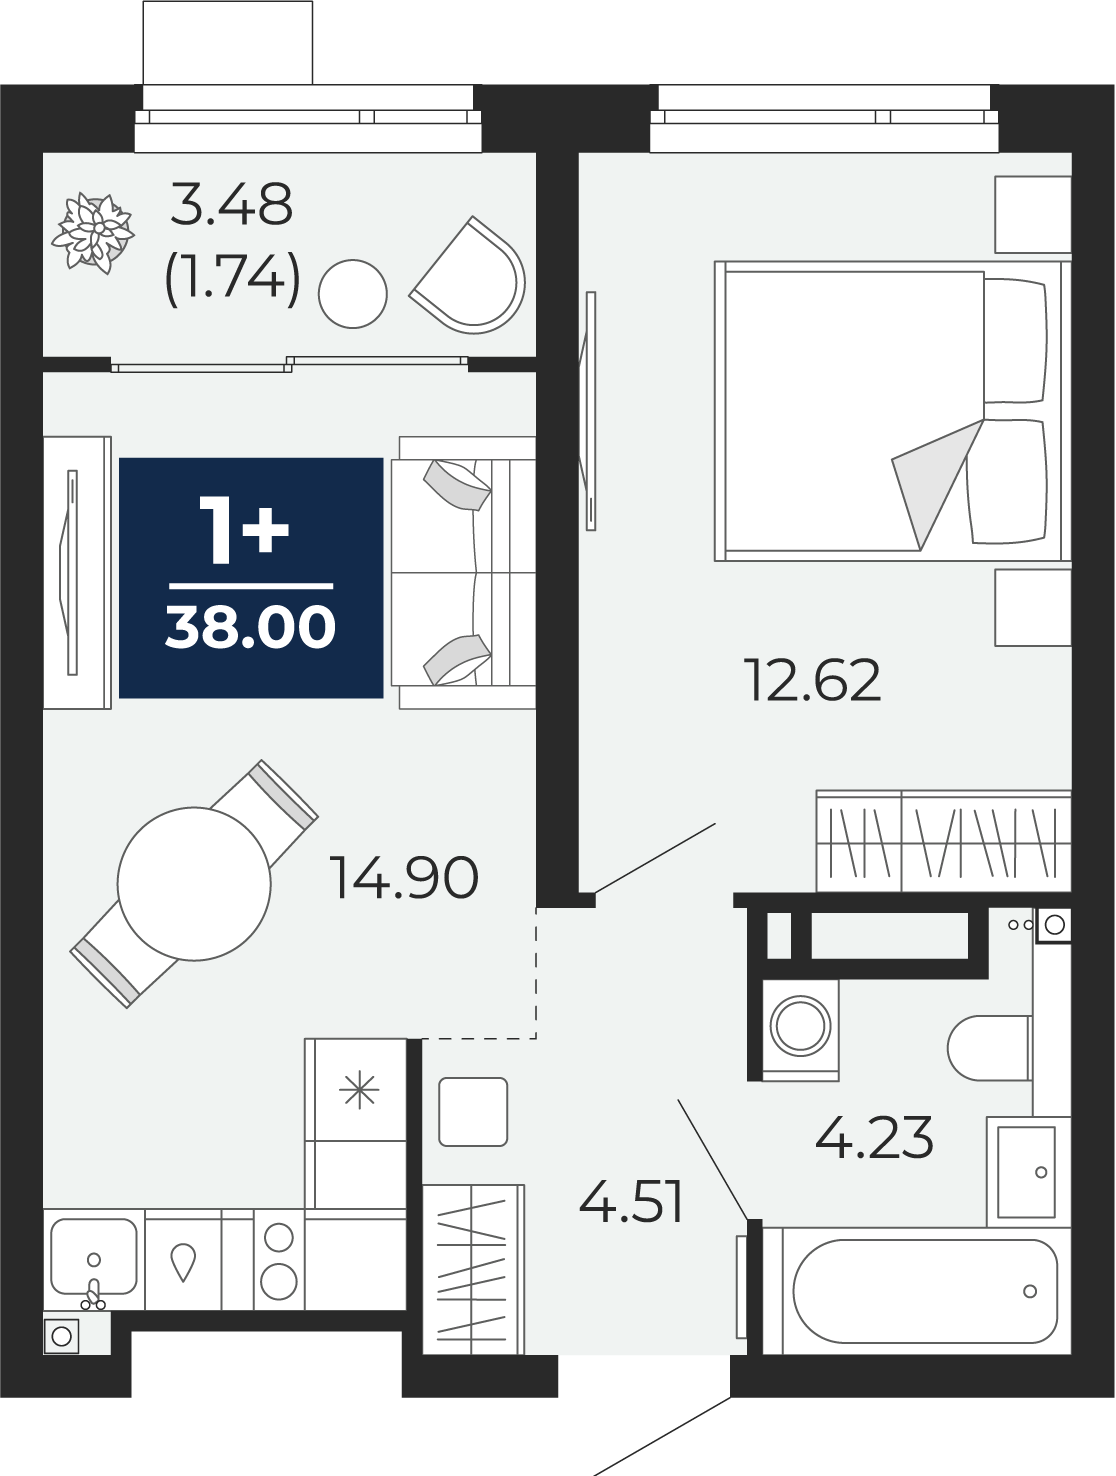 Квартира № 271, 1-комнатная, 38 кв. м, 17 этаж